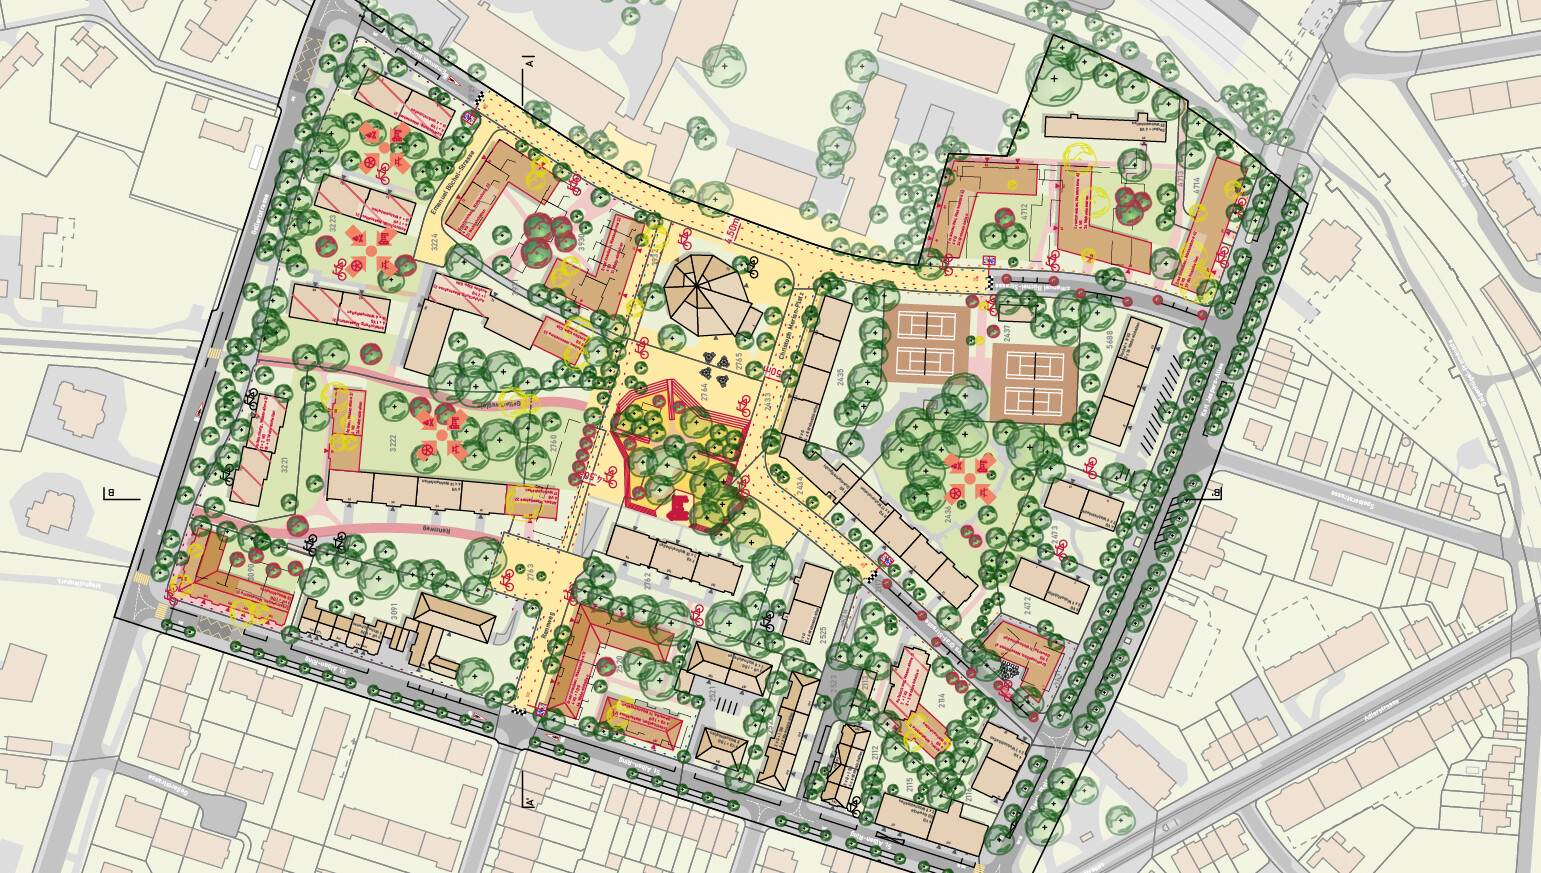 Zeichnung mit Häusern, Bäumen, Strassen als Beispiel des Studienschwerpunktes Raumentwicklung